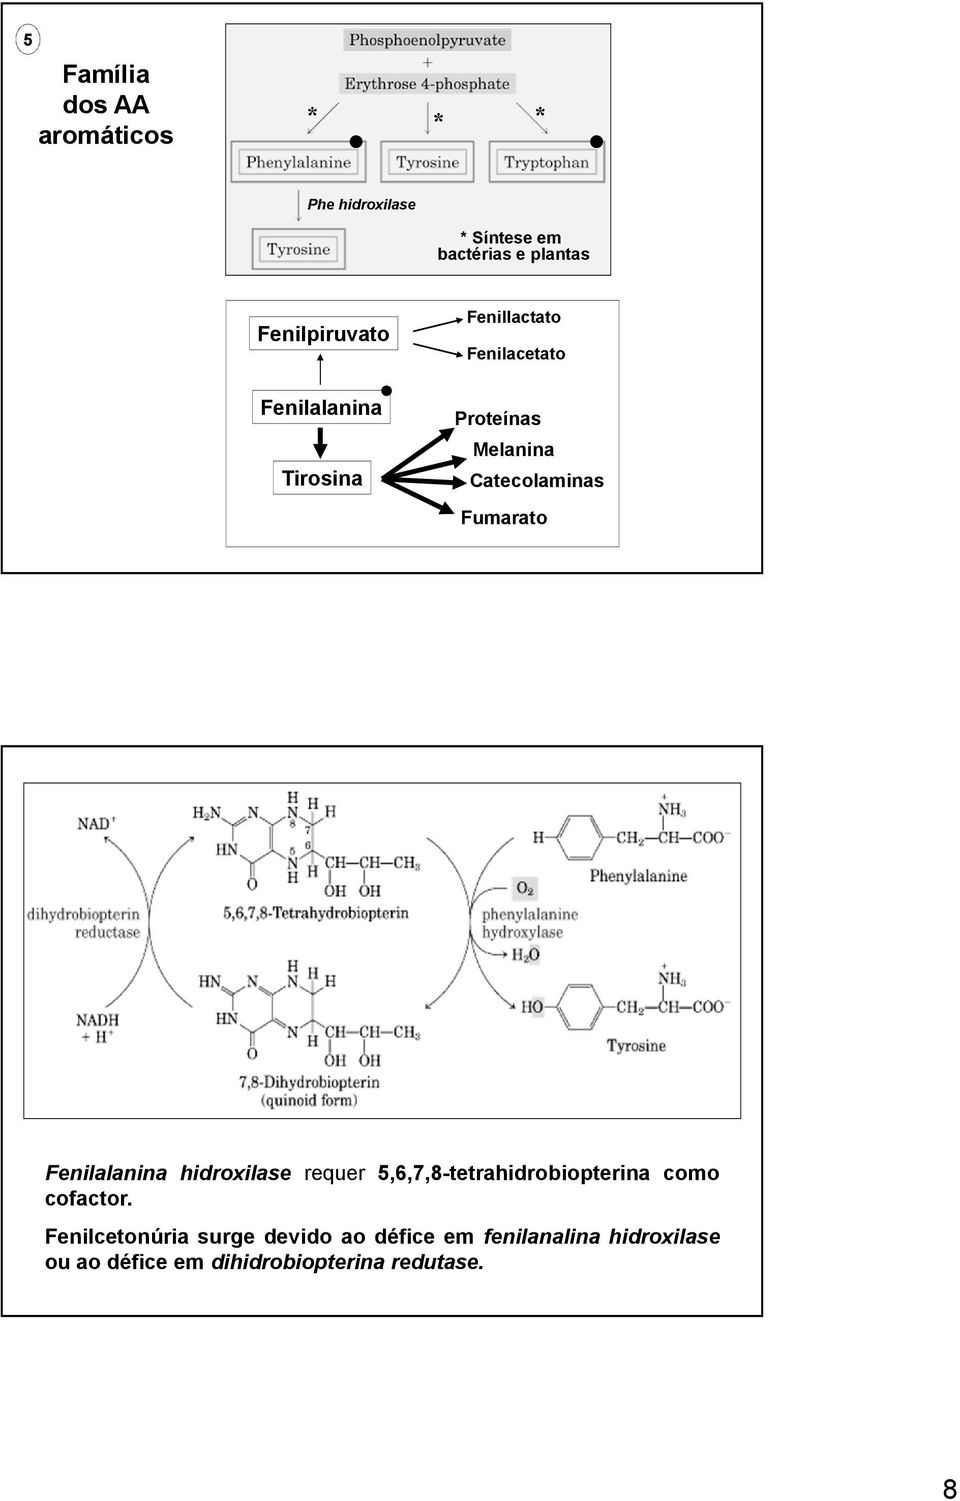 Catecolaminas Fumarato Fenilalanina hidroxilase requer 5,6,7,8-tetrahidrobiopterina como